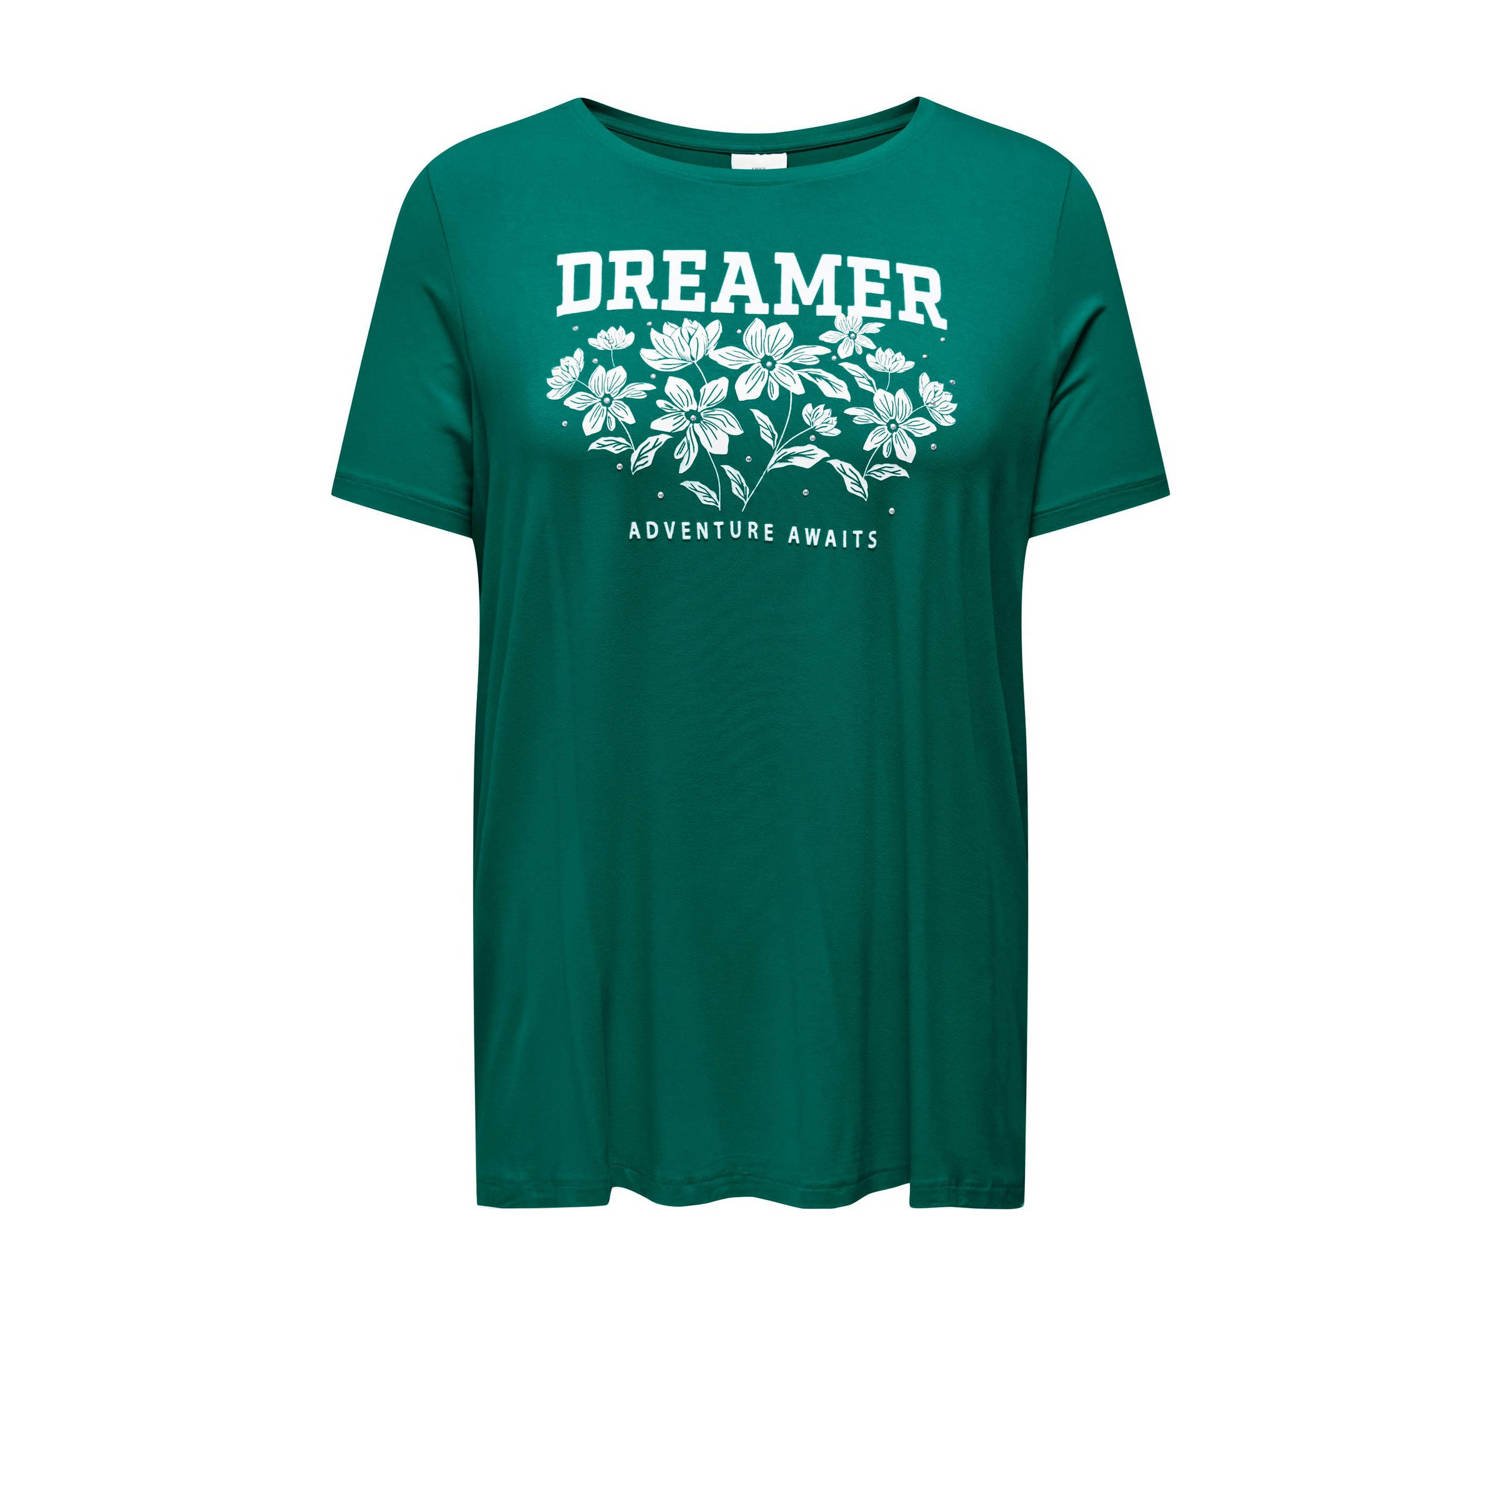 ONLY CARMAKOMA T-shirt CARANINA met printopdruk groen